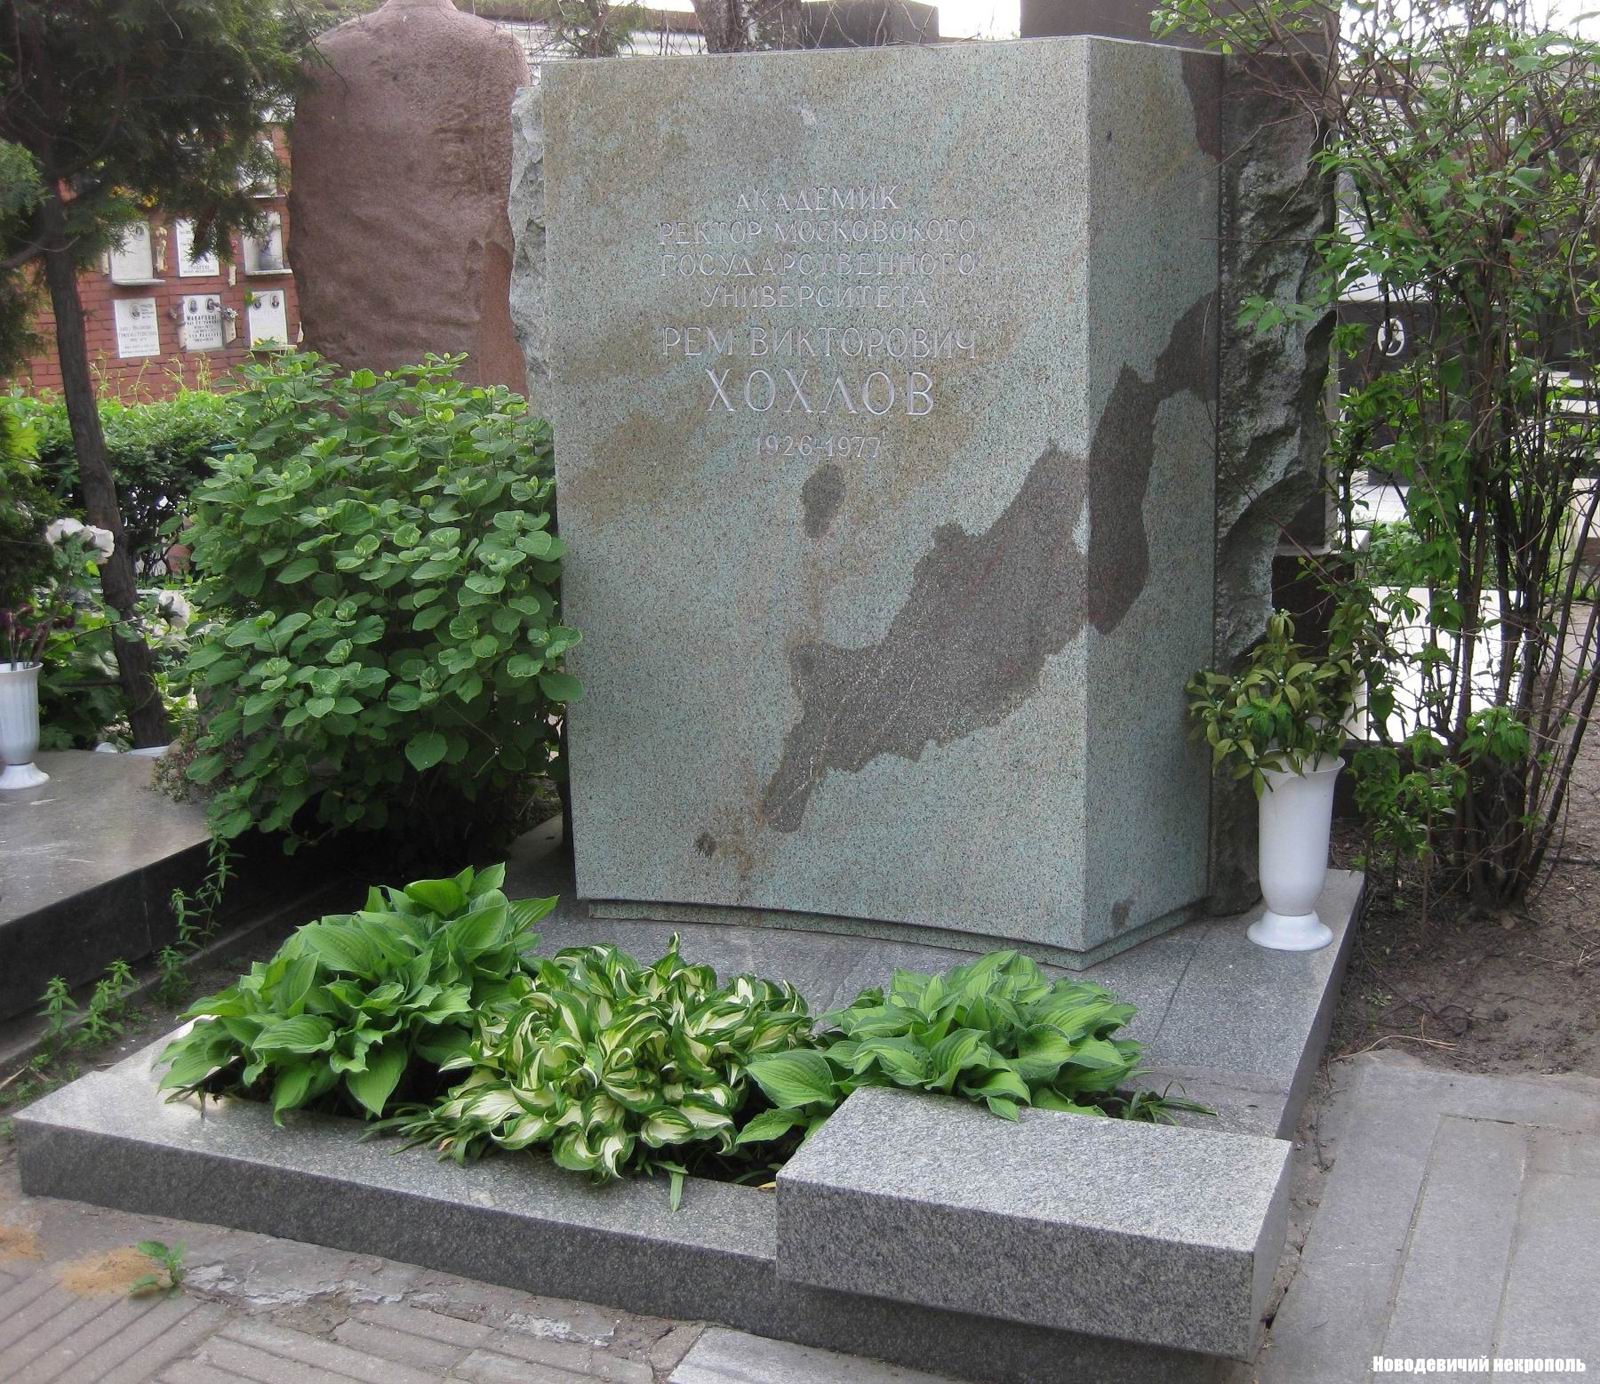 Памятник на могиле Хохлова Р.В. (1926-1977), на Новодевичьем кладбище (7-13-15).